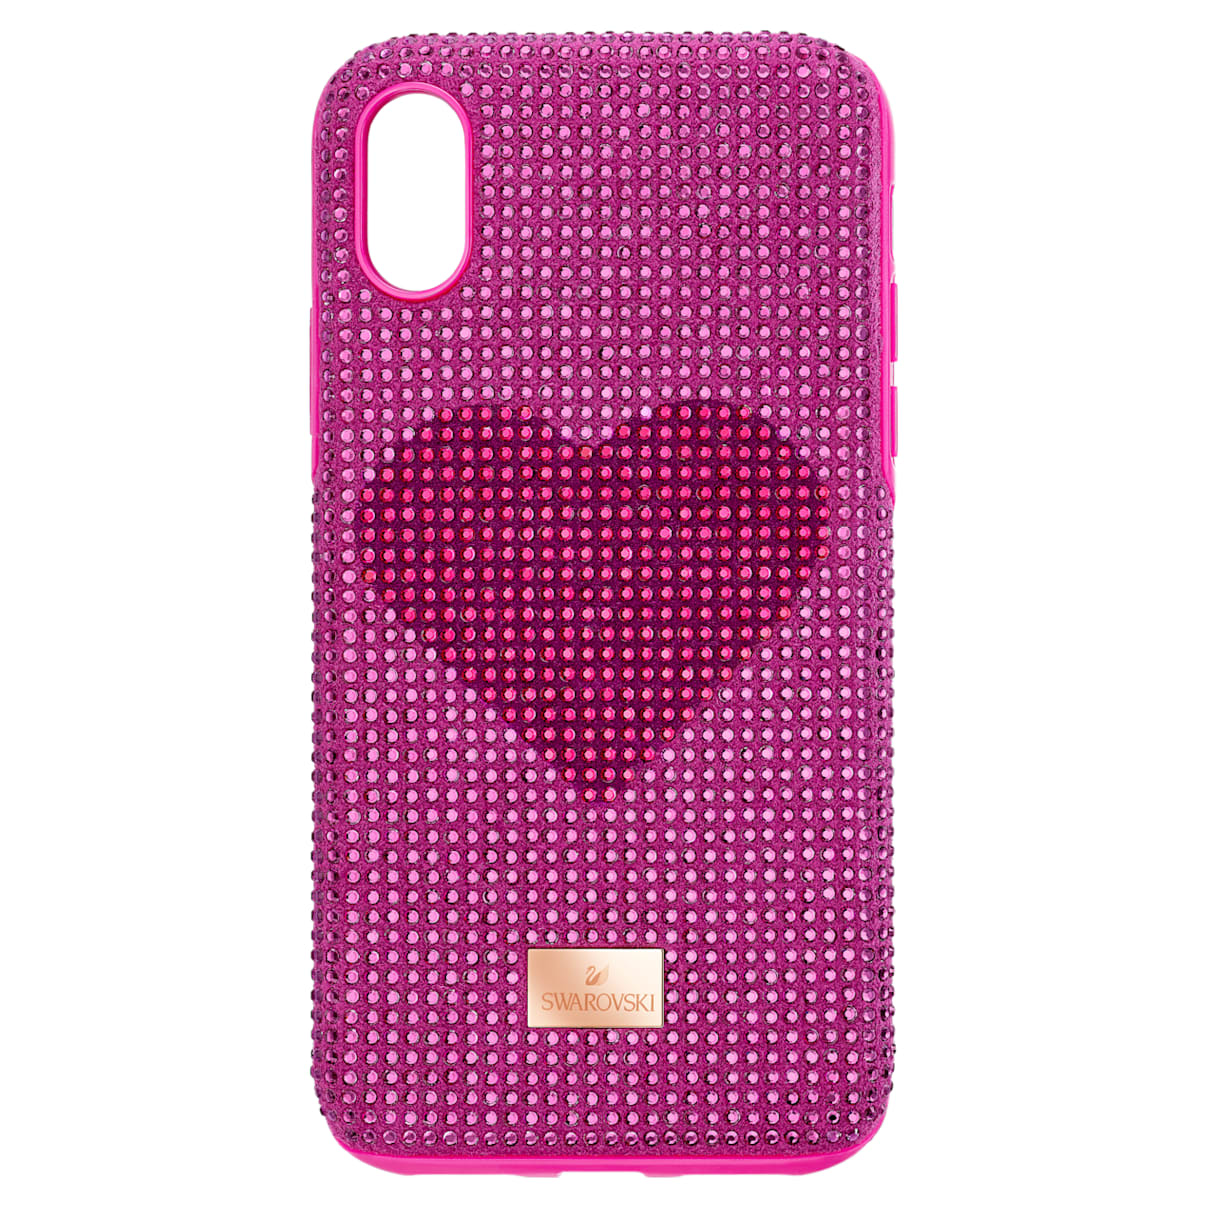 Custodia per smartphone con bordi protettivi Crystalgram Heart, iPhone® XS Max, rosa